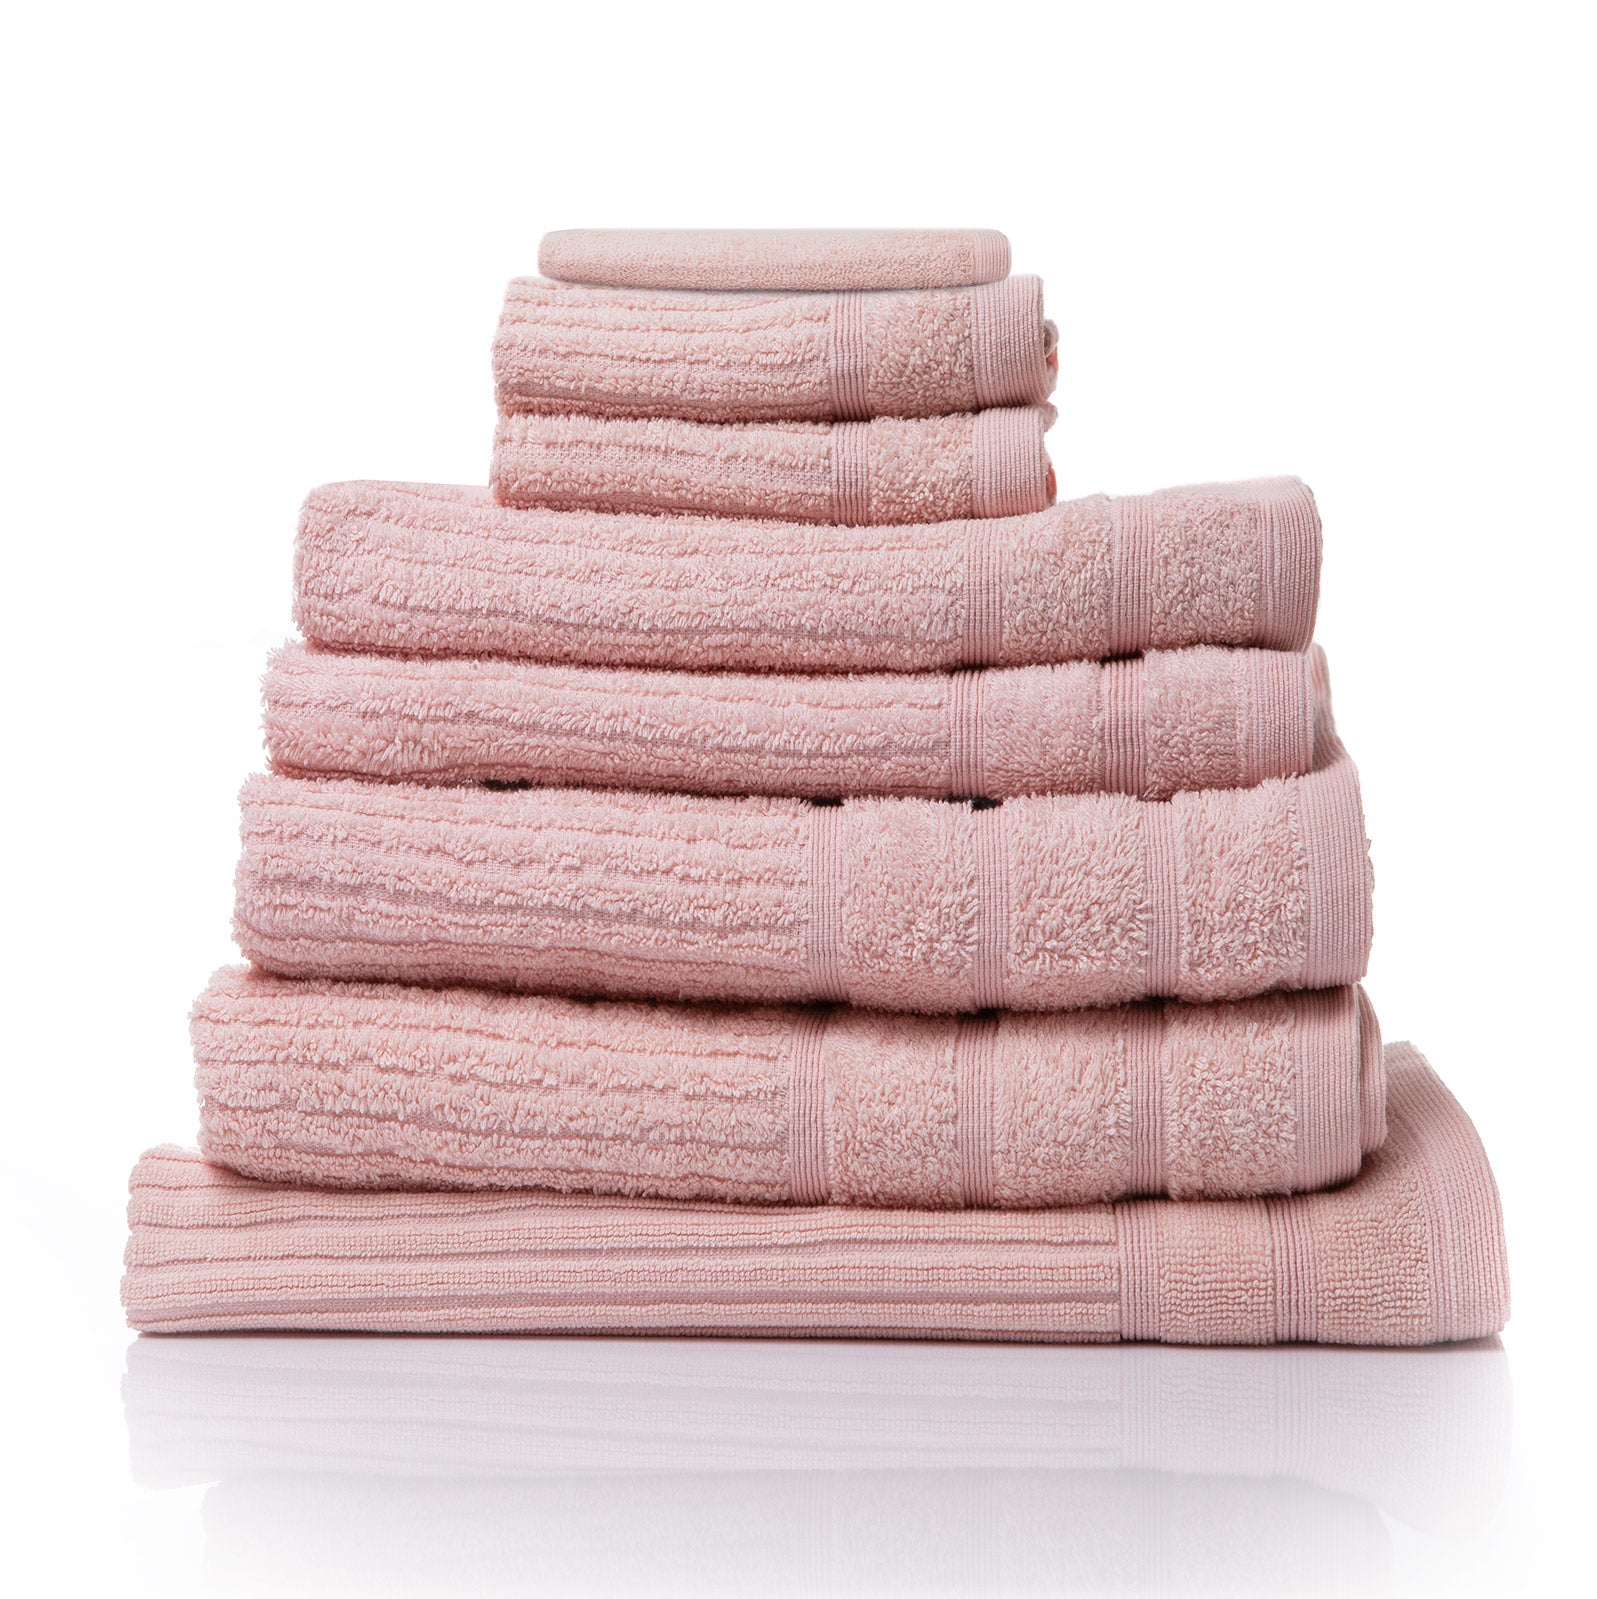 Royal Comfort Eden Egyptian Cotton 600GSM 8 Piece Luxury Bath Towels Set - Blush